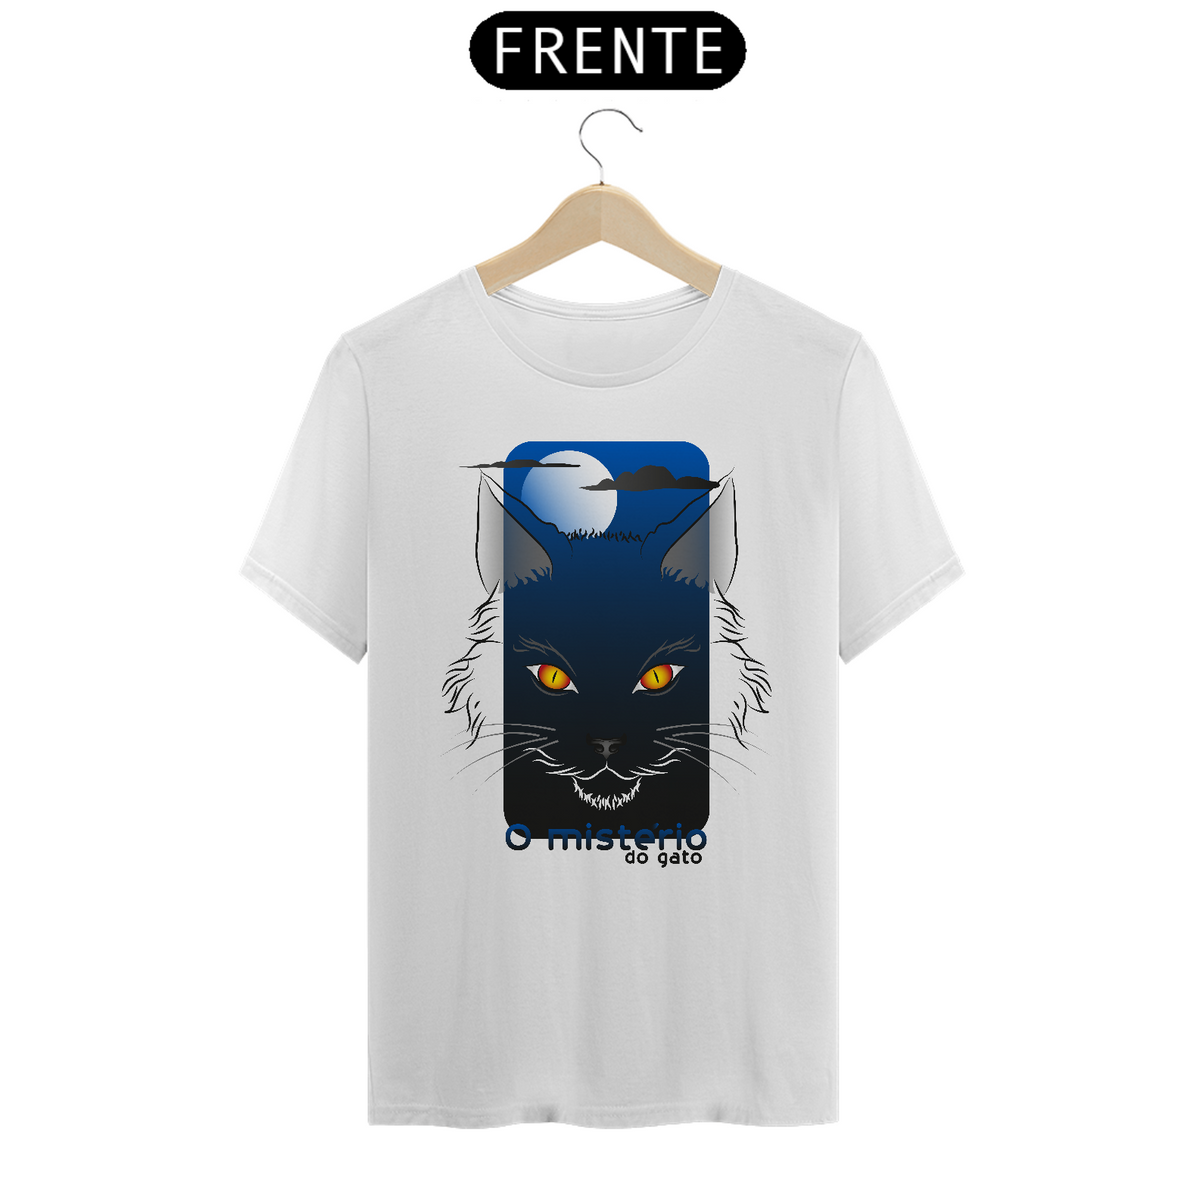 Nome do produto: T-Shirt Classic - O mistério do gato - 1